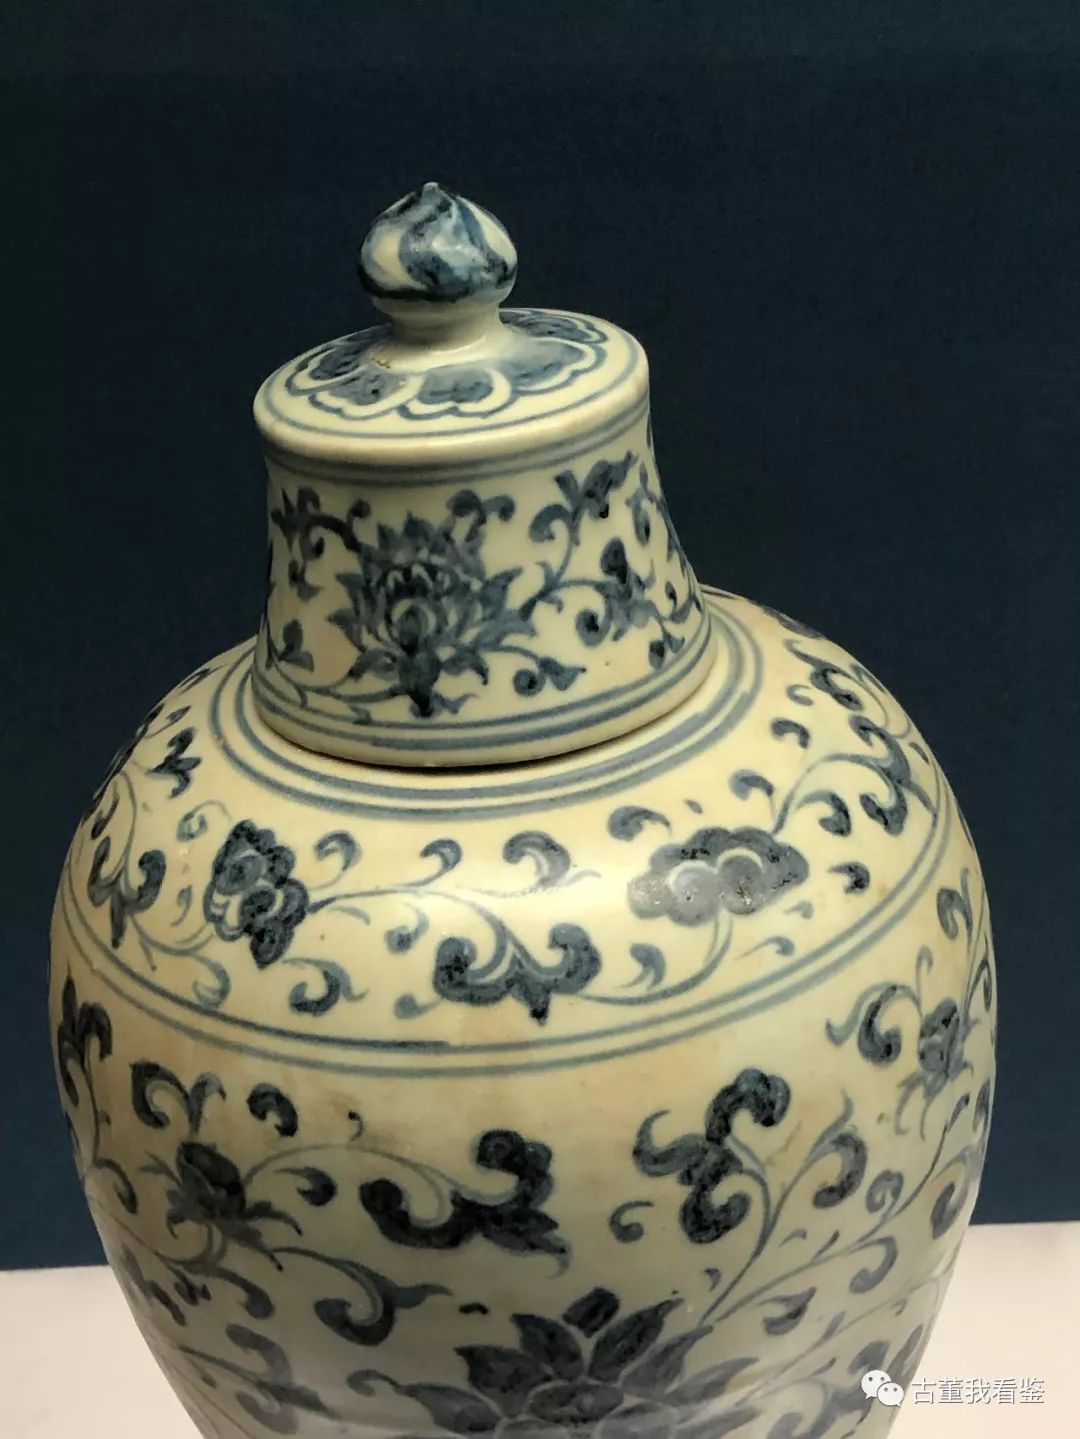 我在上海博物馆看明代瓷器大展5240张高清图古董我看鉴